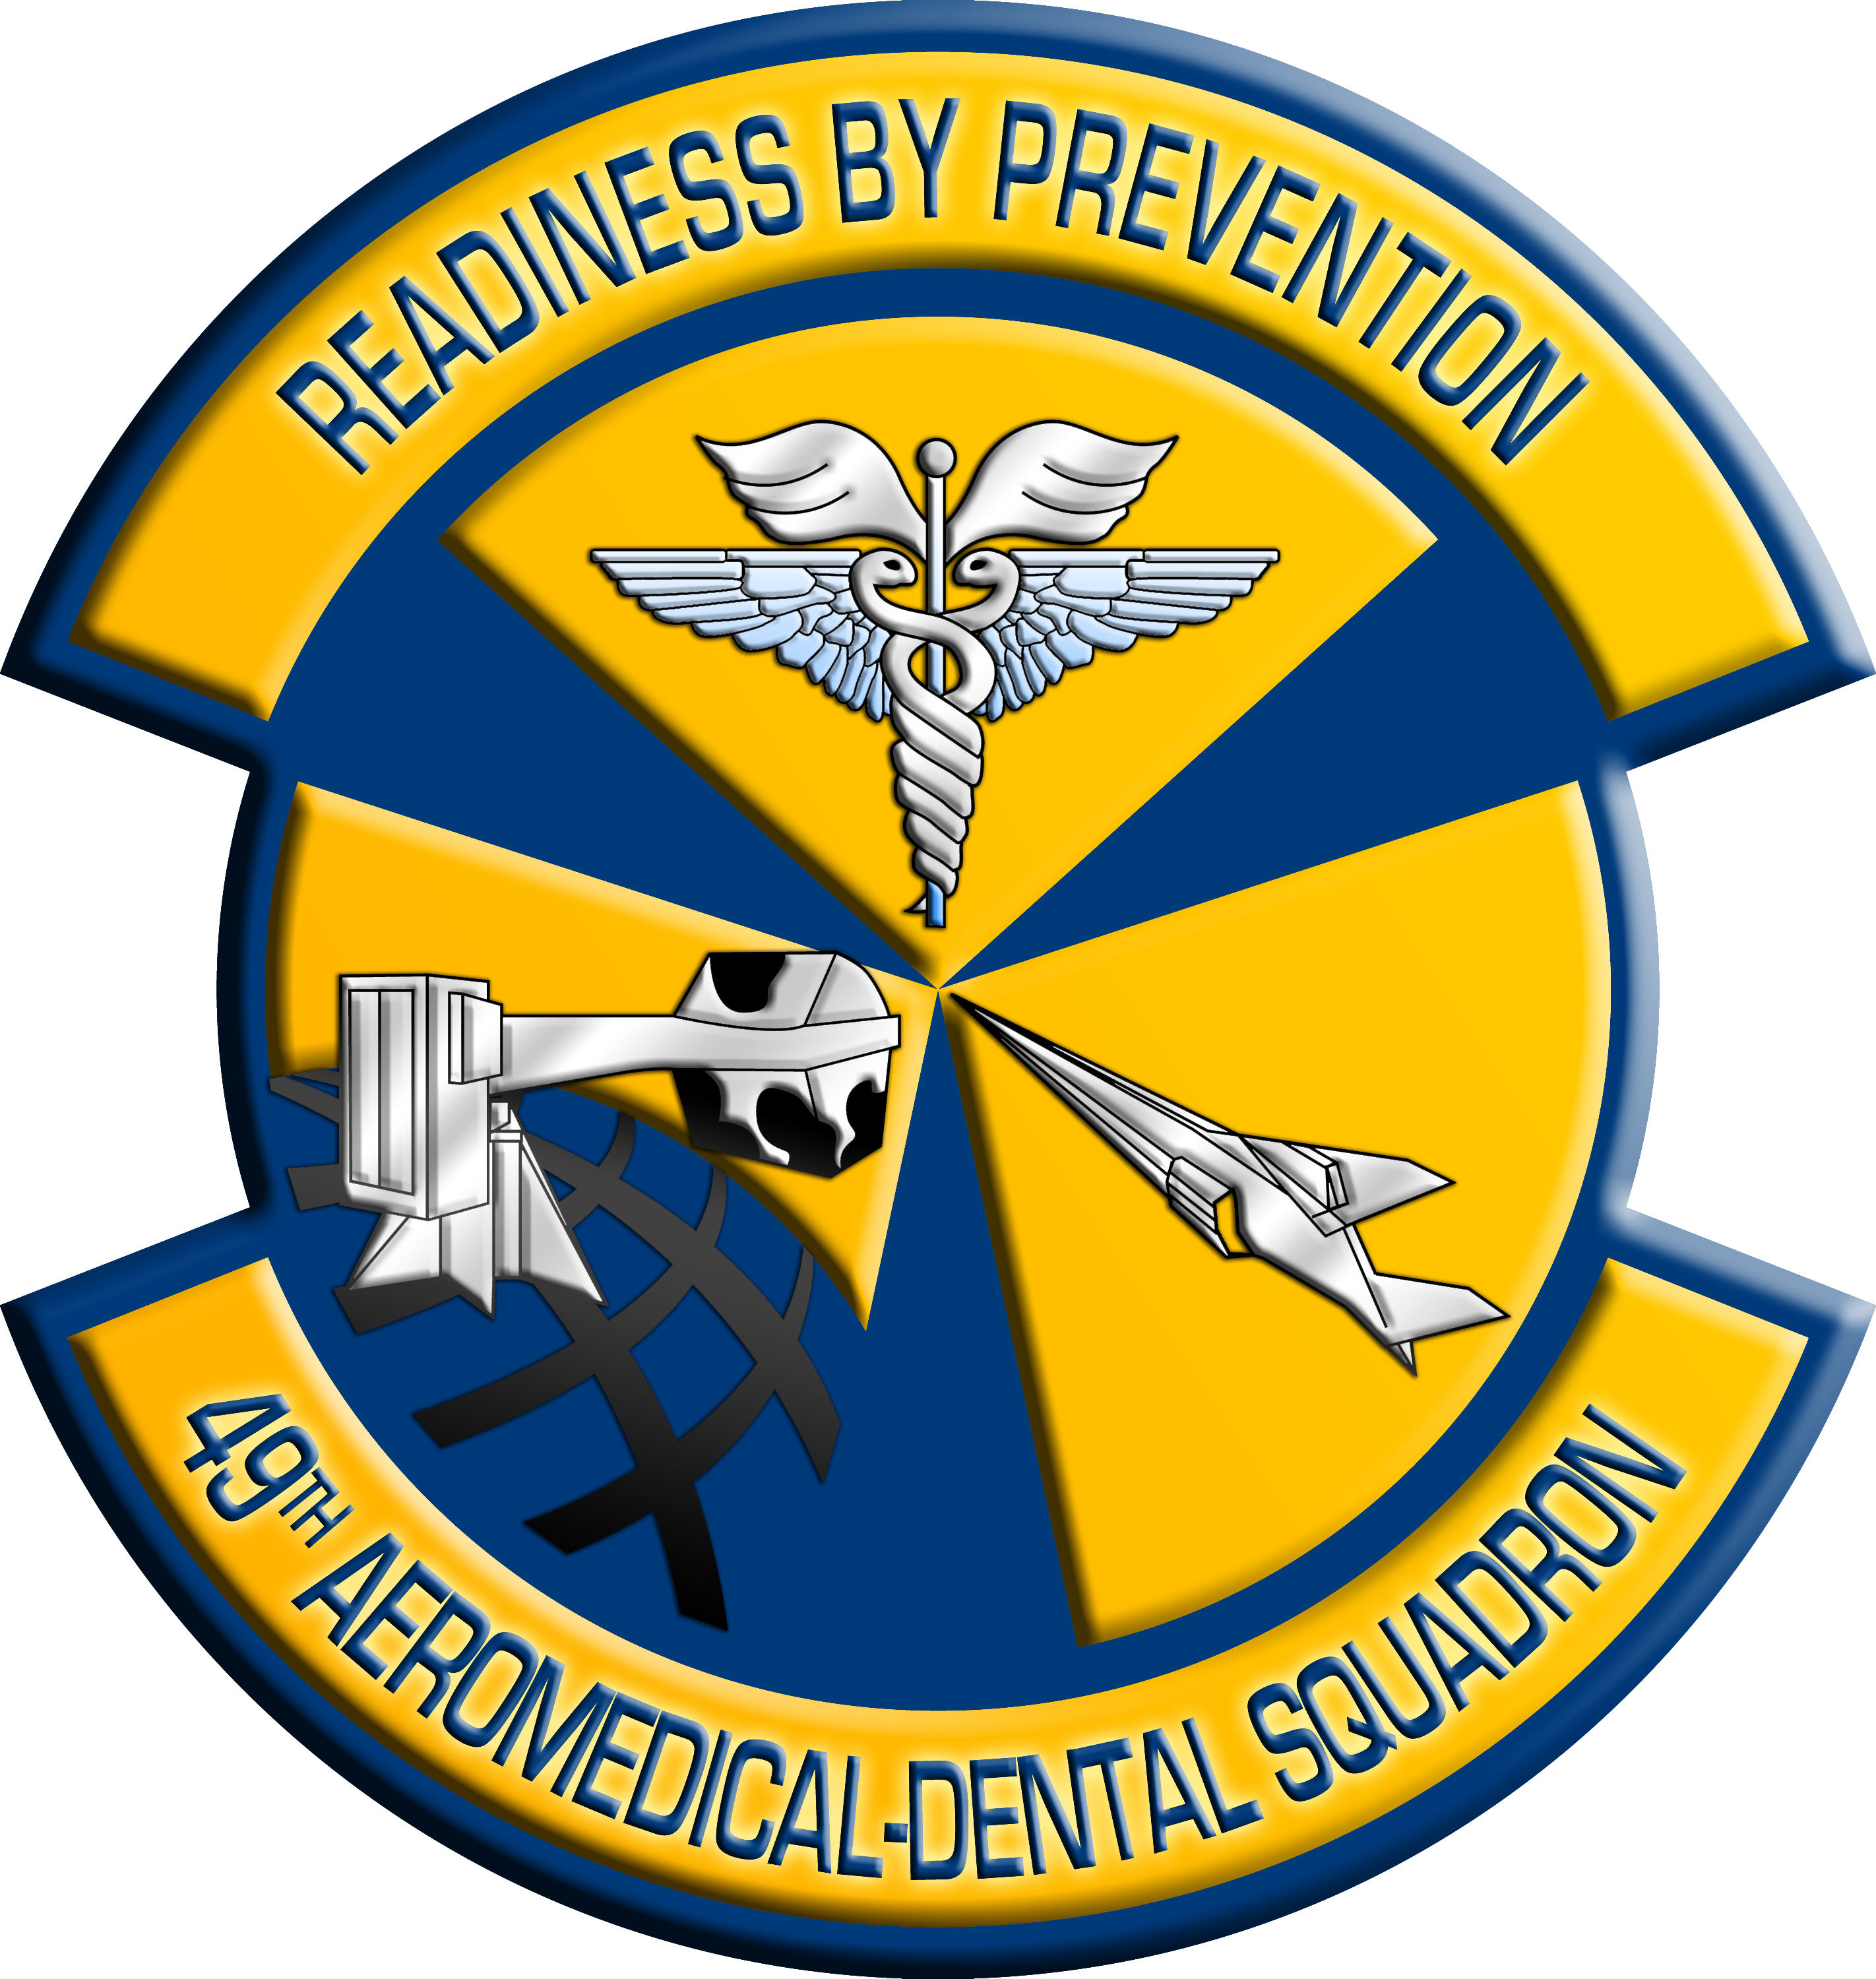 空军标志logo壁纸图片